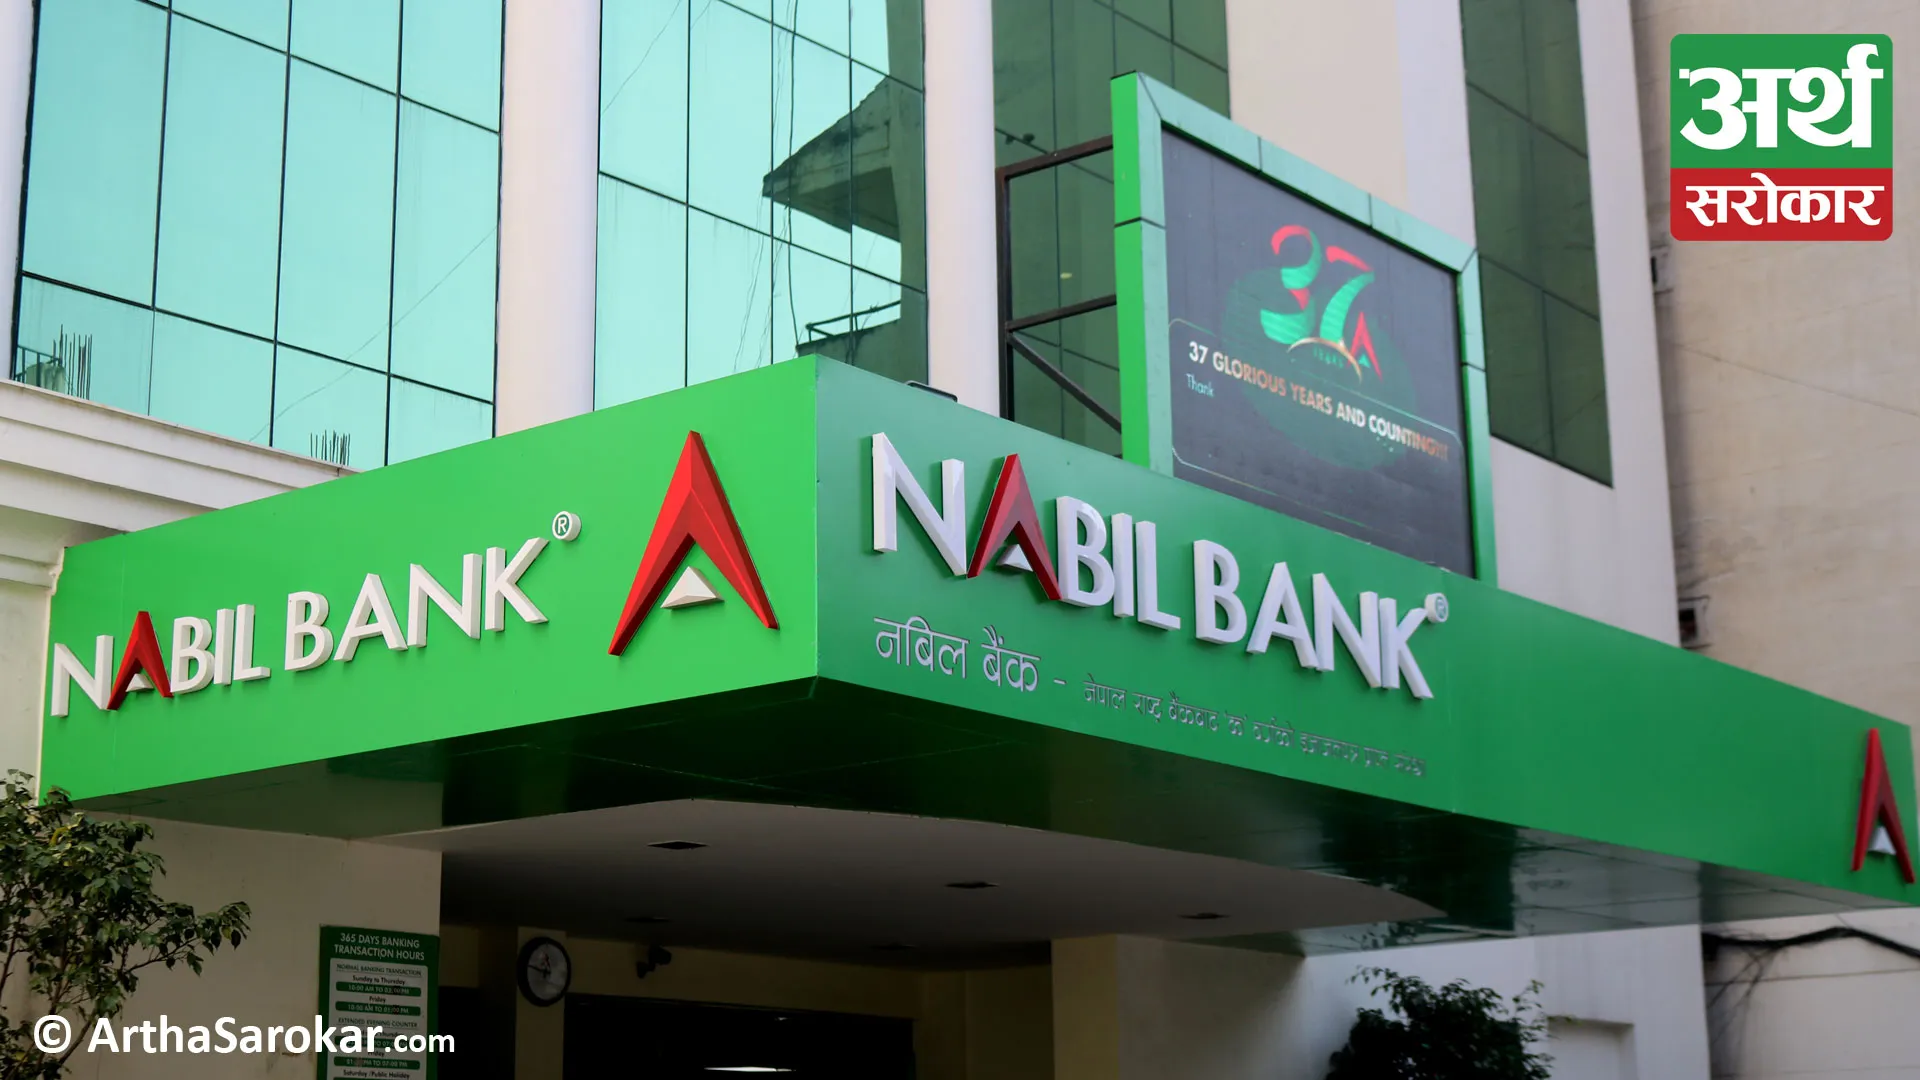 Nabil Bank announce an 11% cash dividend